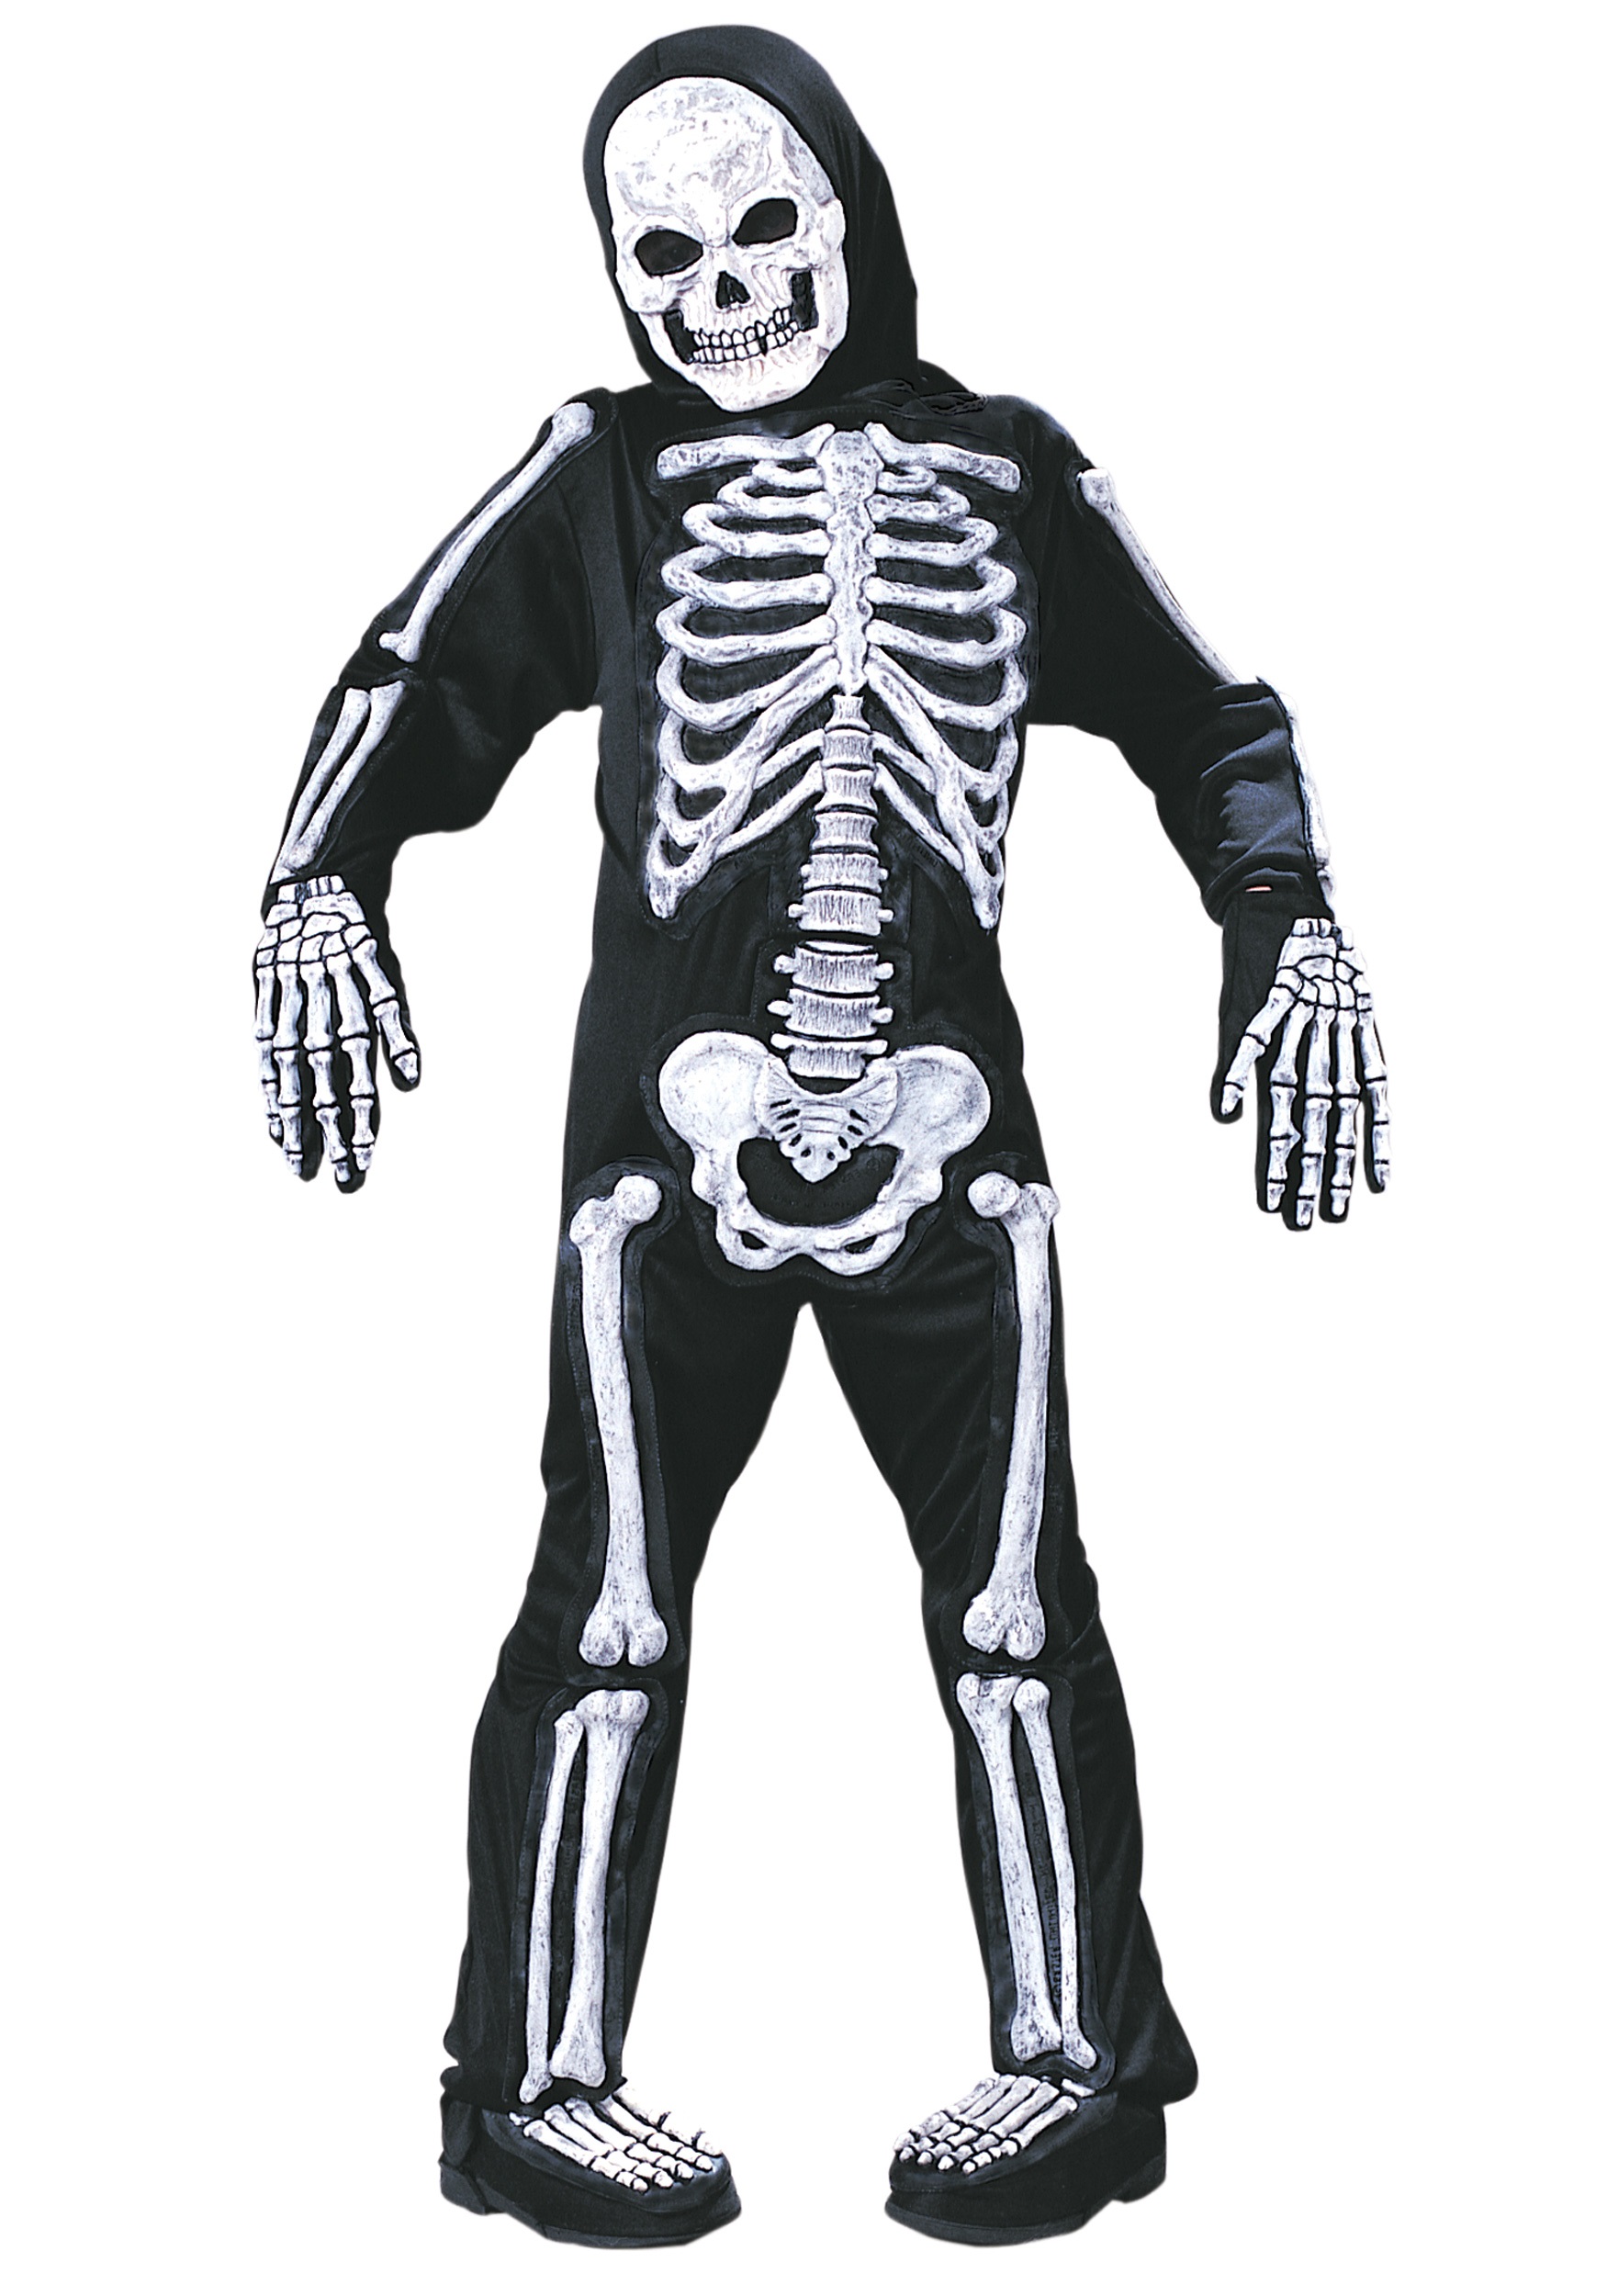 Photos - Fancy Dress Fun World Skeleton Costume Black/White FU873638W